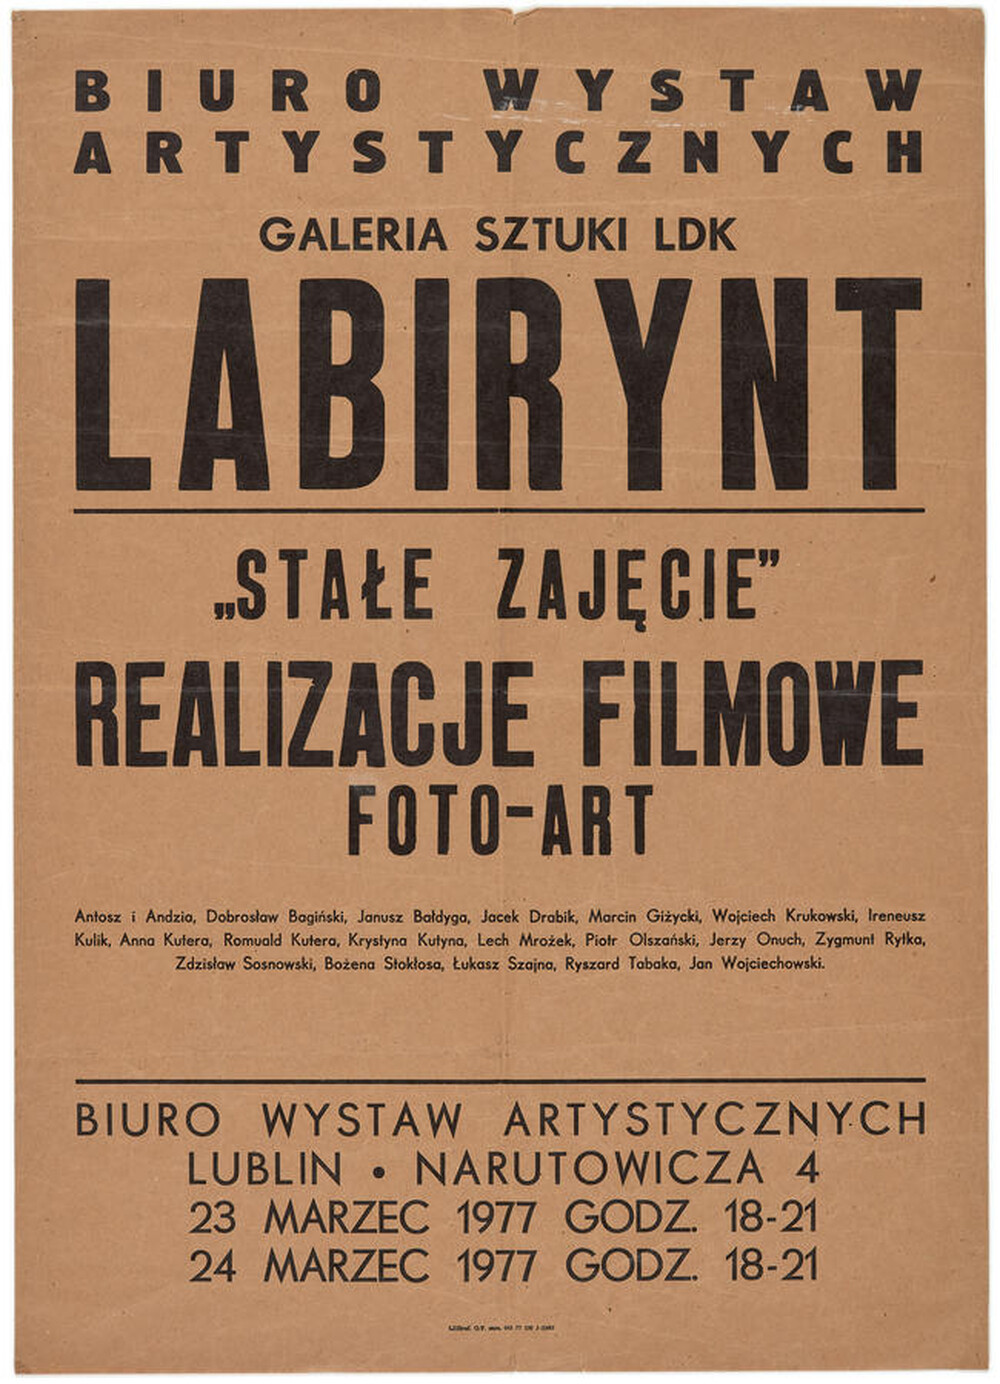 Plakat „Stałe zajęcie”, realizacje filmowe Foto-Art.